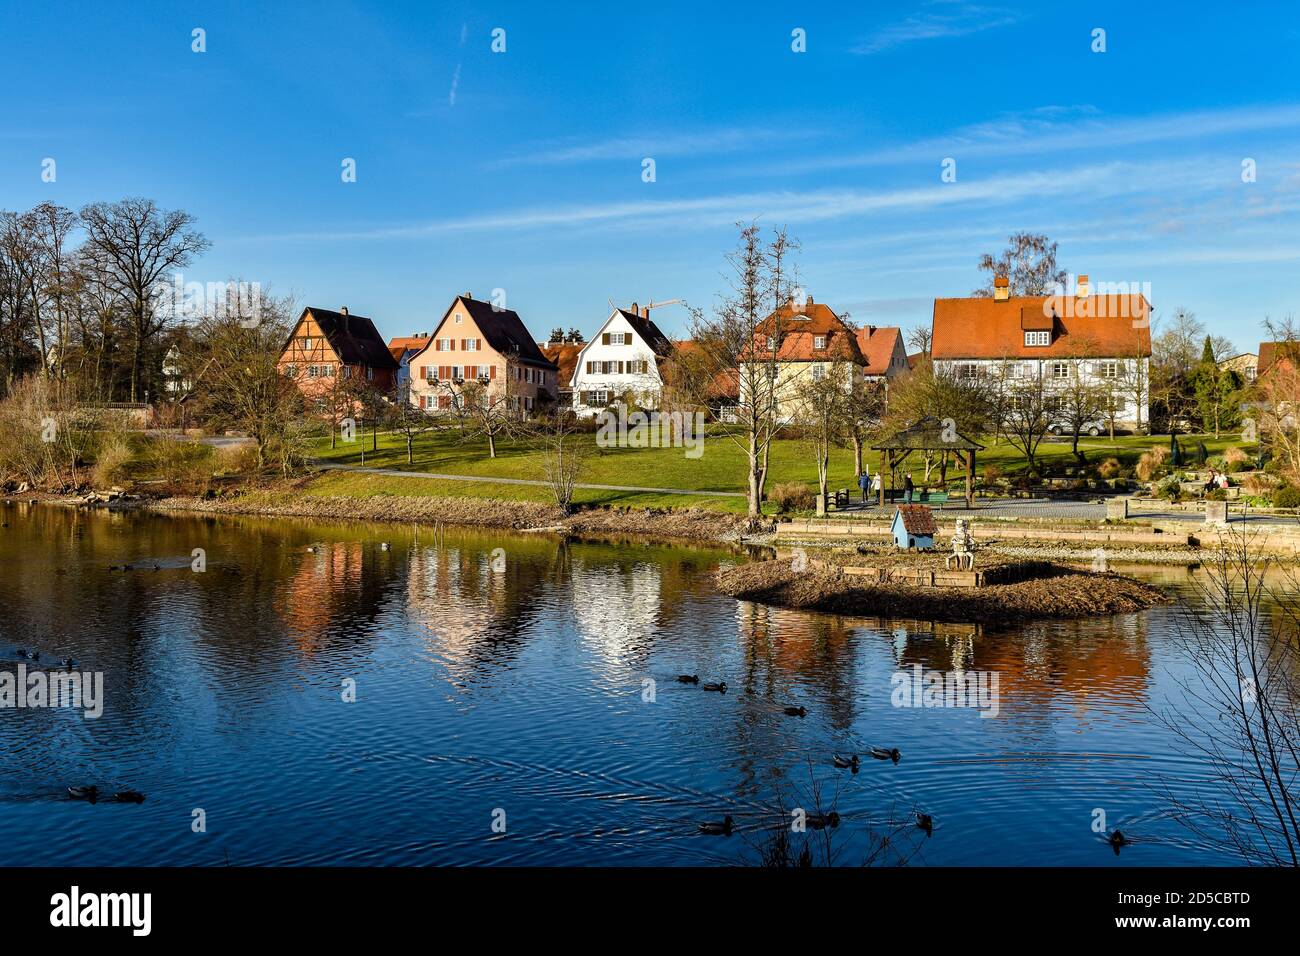 Dinkelsbühl al momento del battesimo. Casa colorata a graticcio, case, lago, cielo blu. Baden-Wurttemberg, Germania. Foto Stock